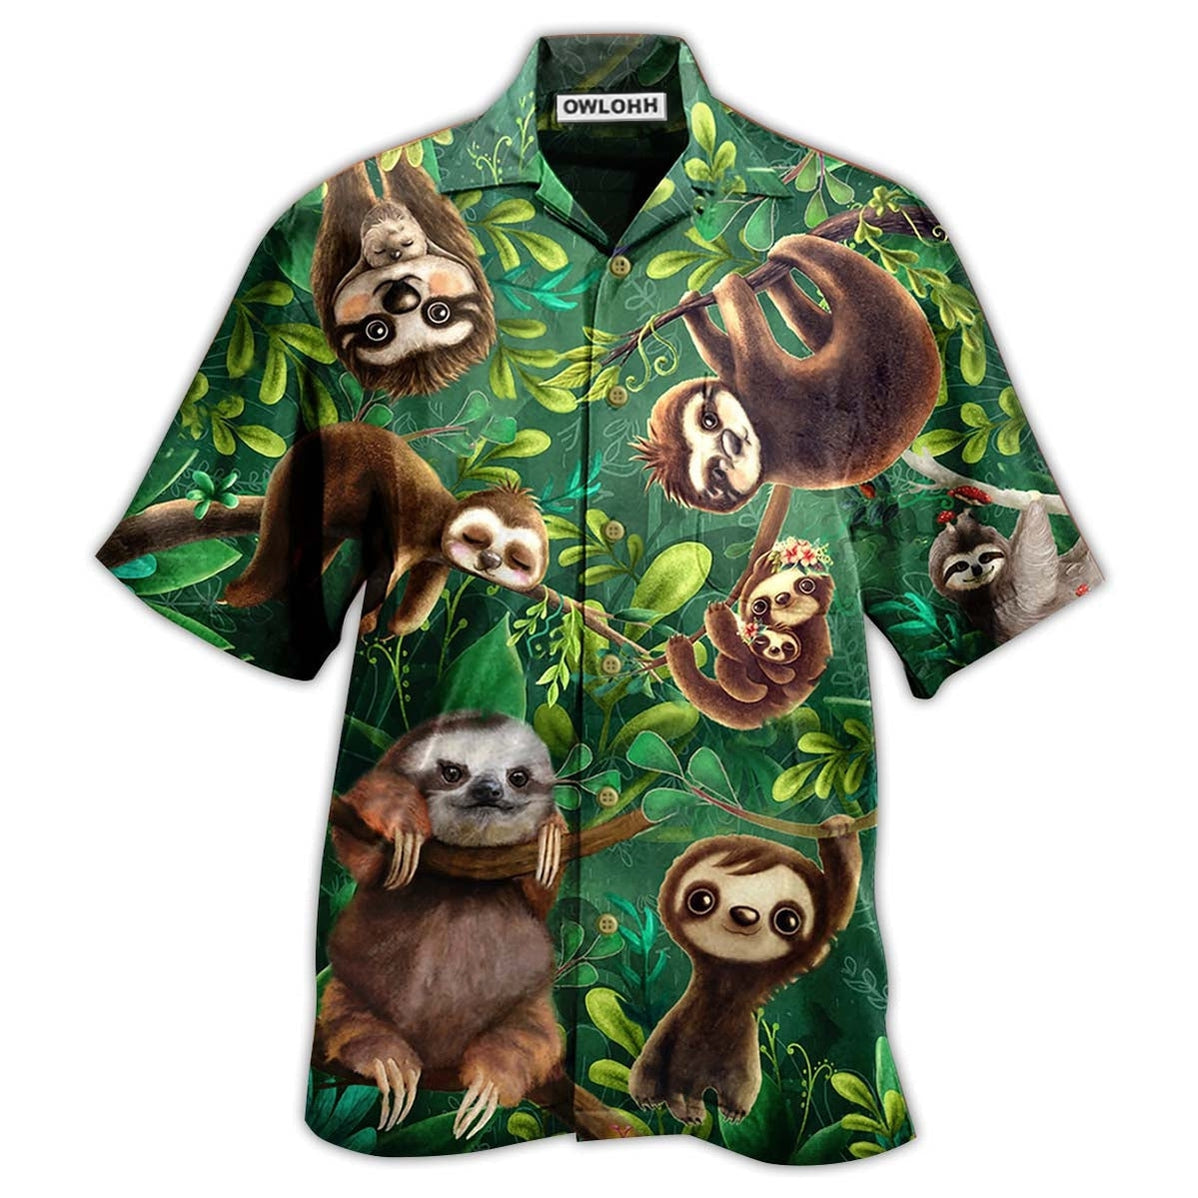 Hawaiian Shirt / Adults / S Sloth Lovely Cute Animals - Hawaiian Shirt - Owls Matrix LTD